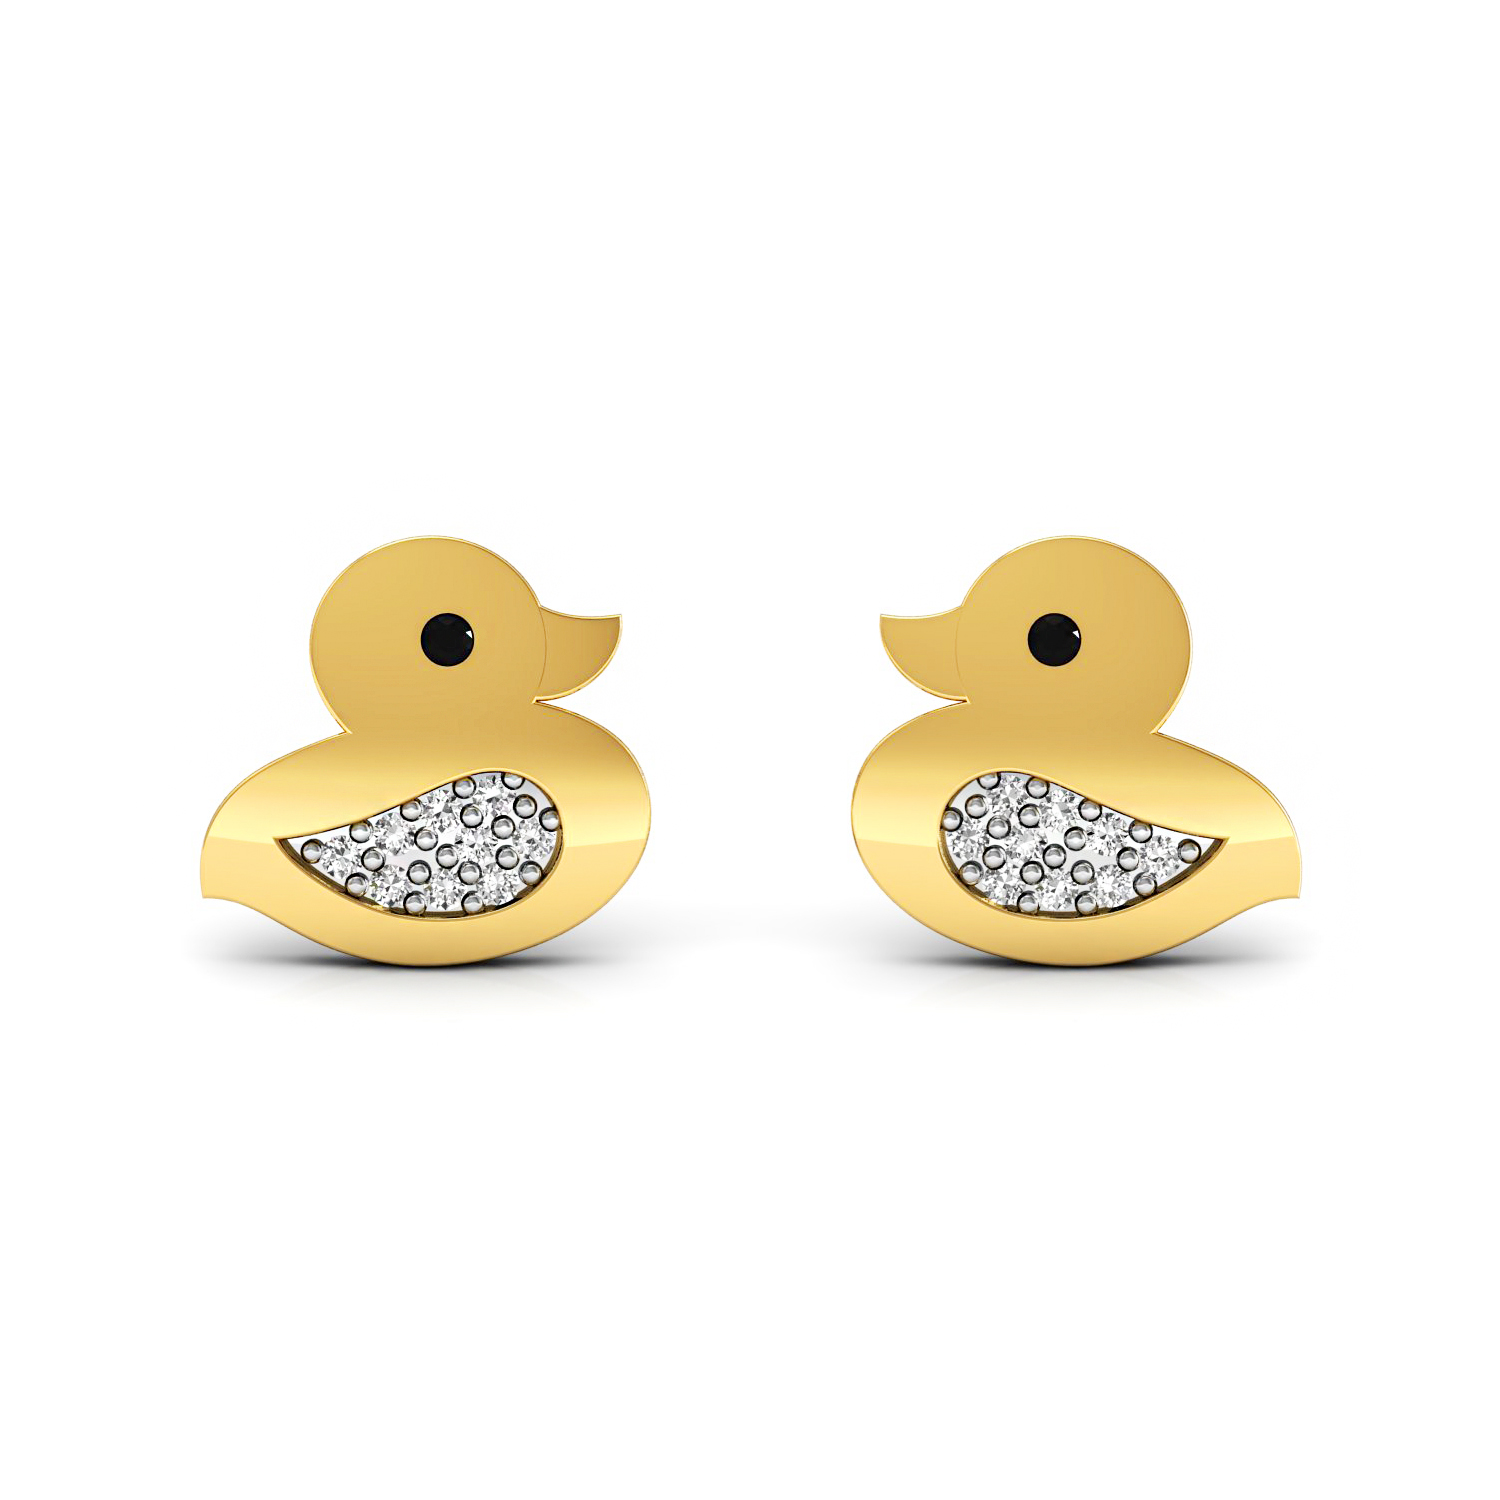 Duck shape kids stud earrings set in solid gold real diamond